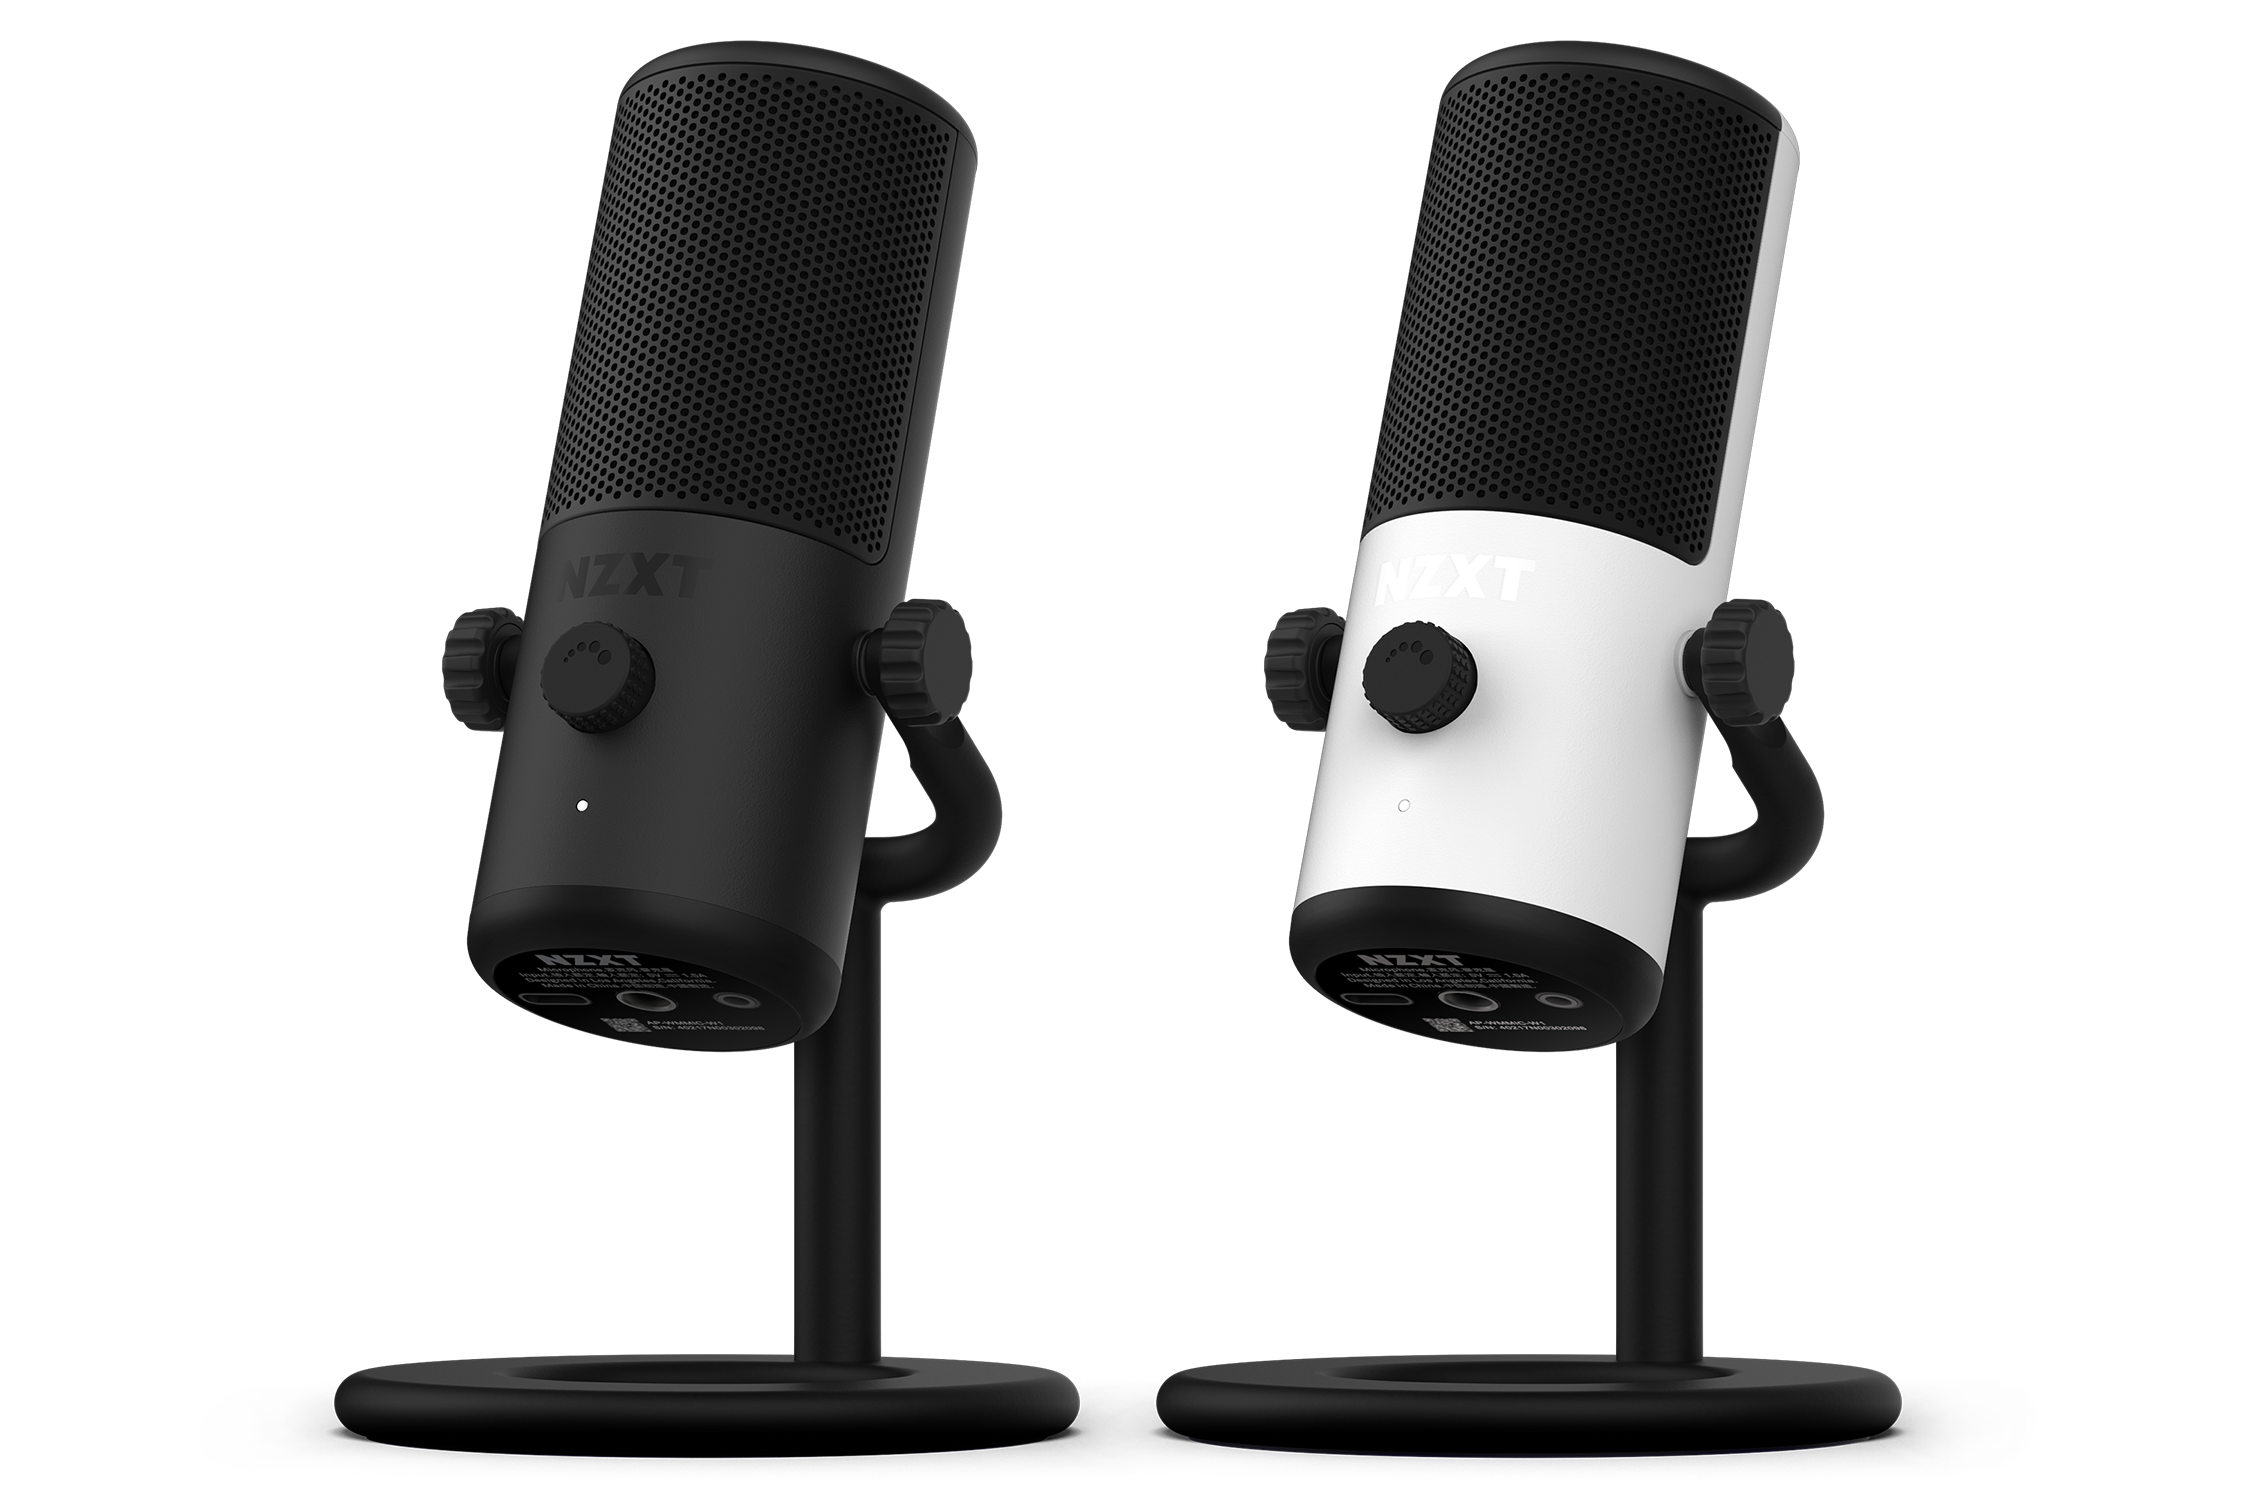 NZXT annuncia i microfoni USB Capsule Mini e Boom Arm Mini